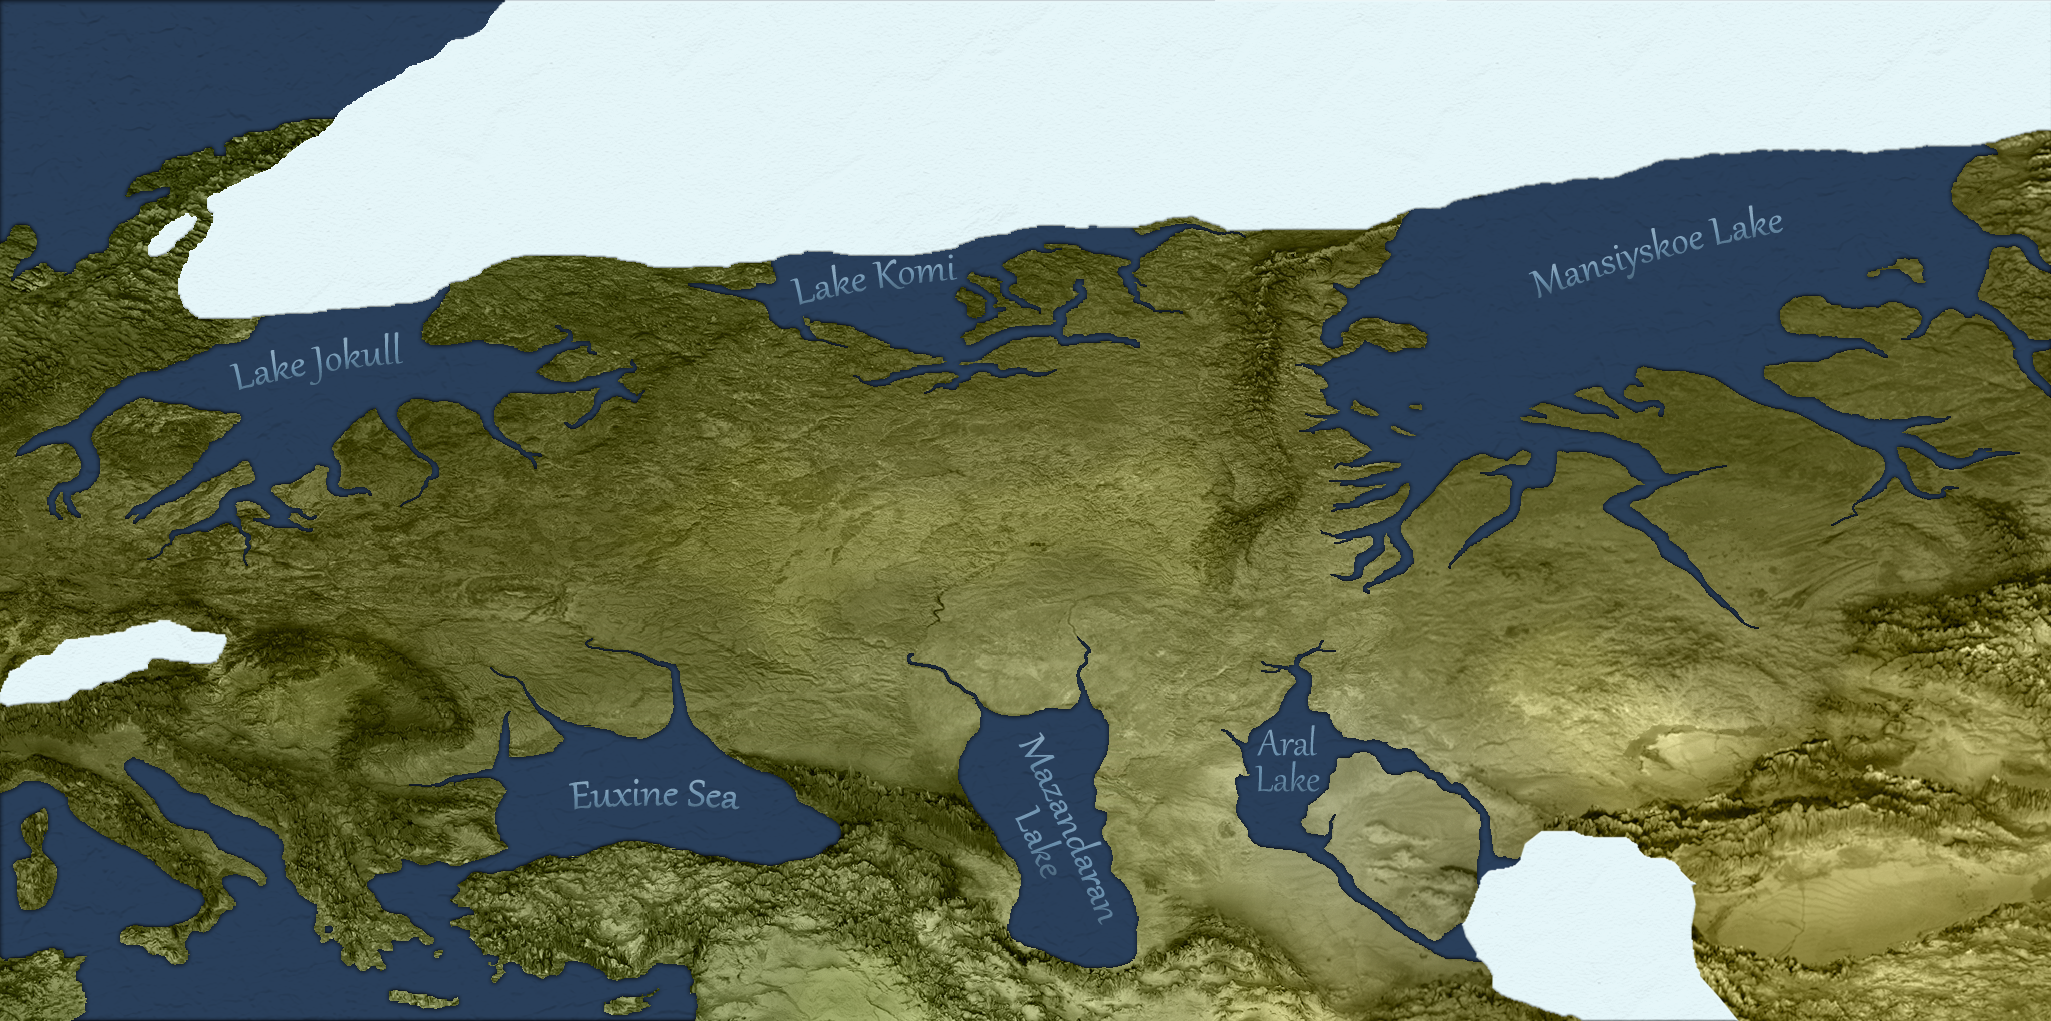 Large Lakes of Eurasia (43,020 BP)